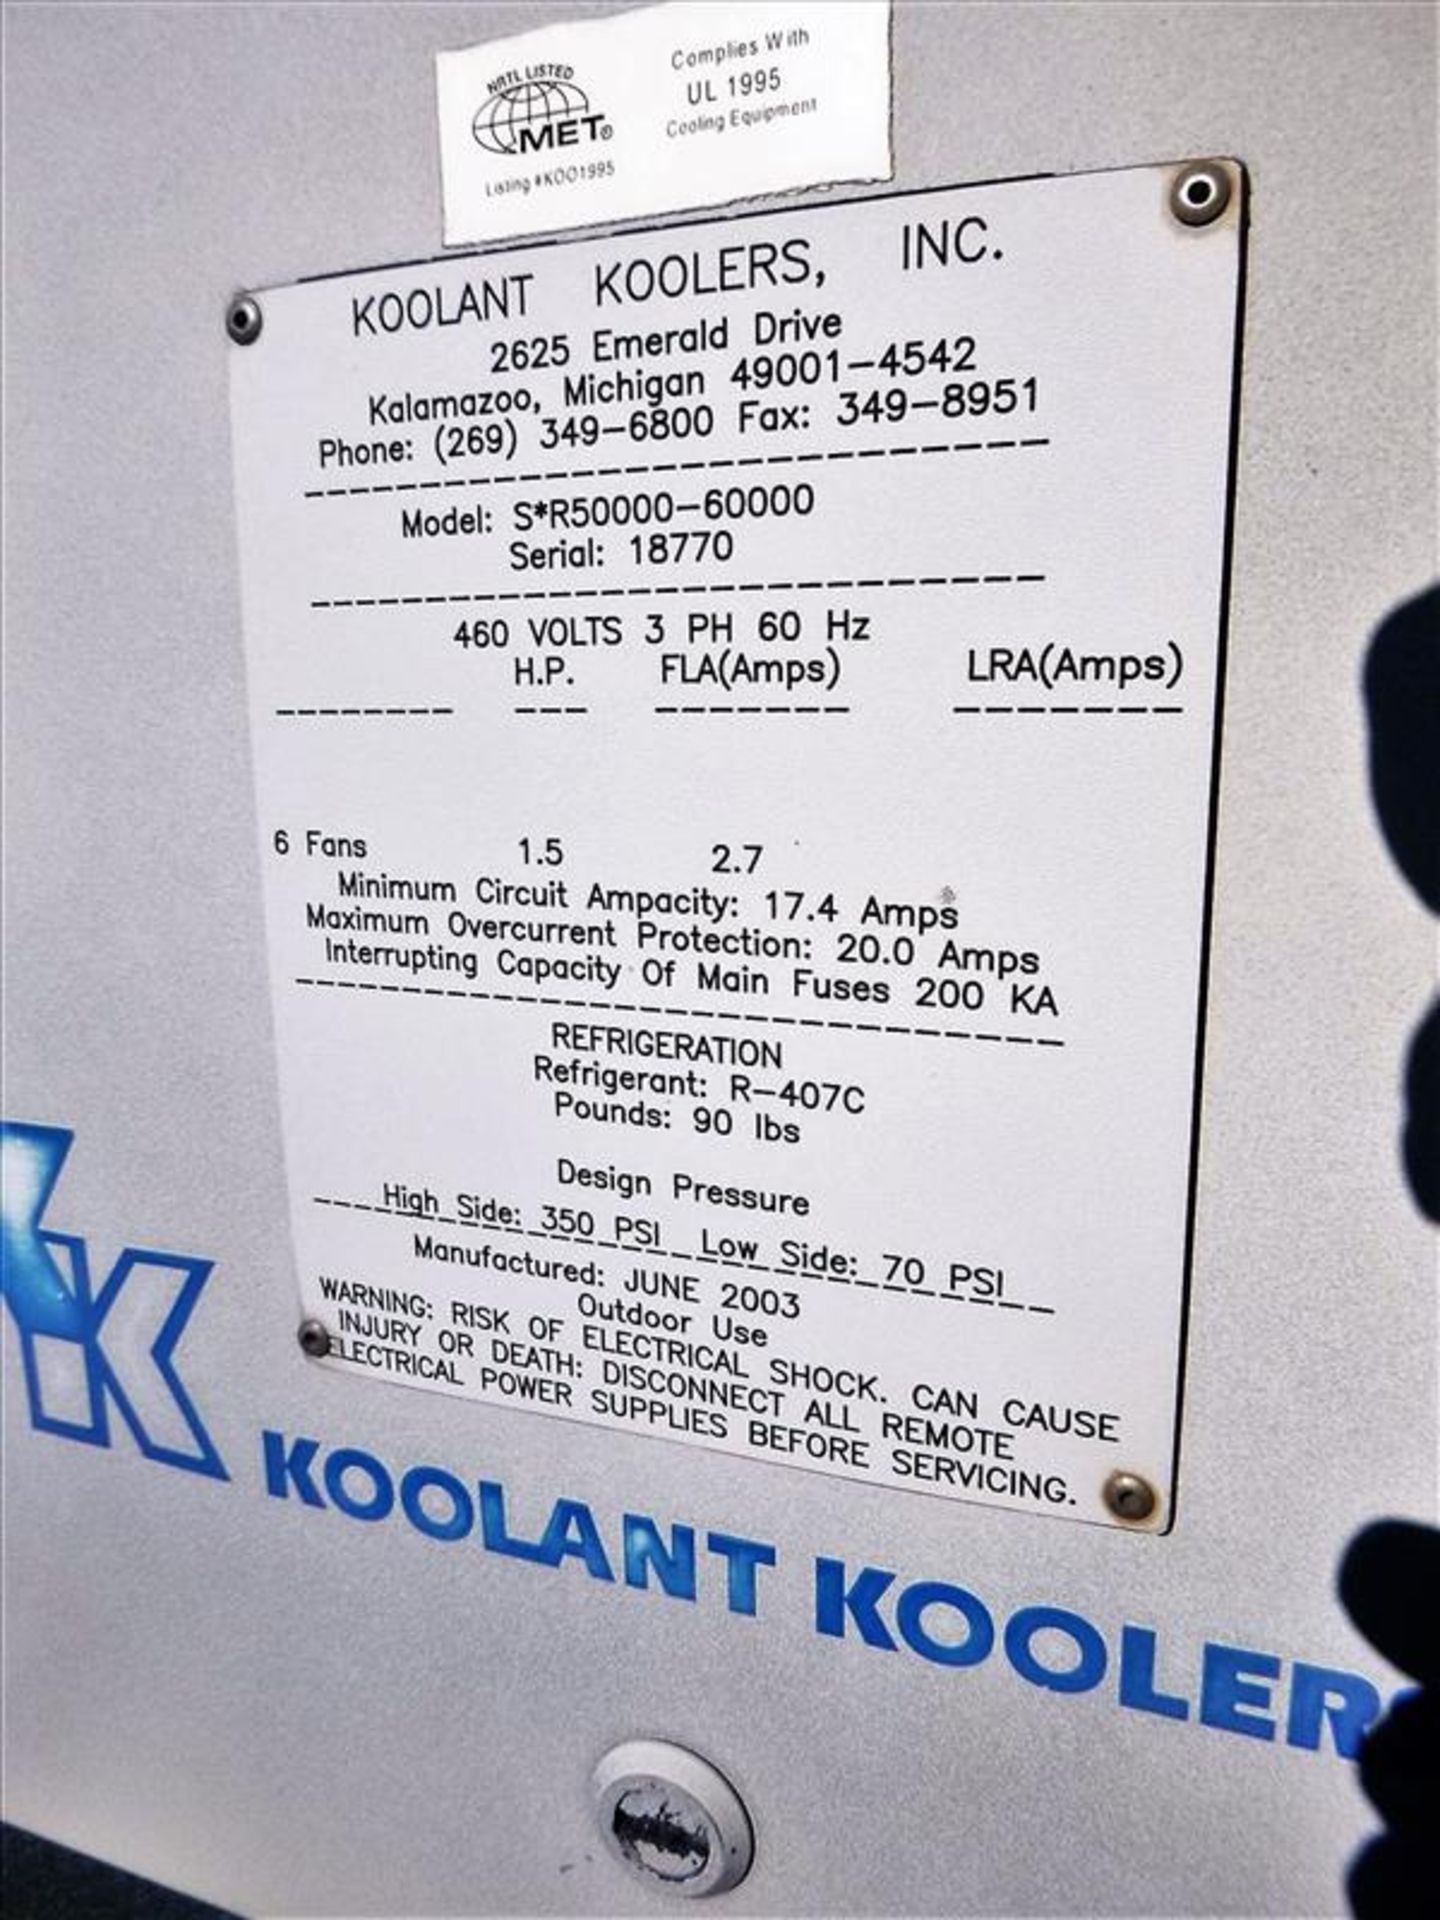 KOOLANT COOLERS SR50000-60000 Remote Condenser, s/n 18770, 6-Fan, R-407C - Image 4 of 4